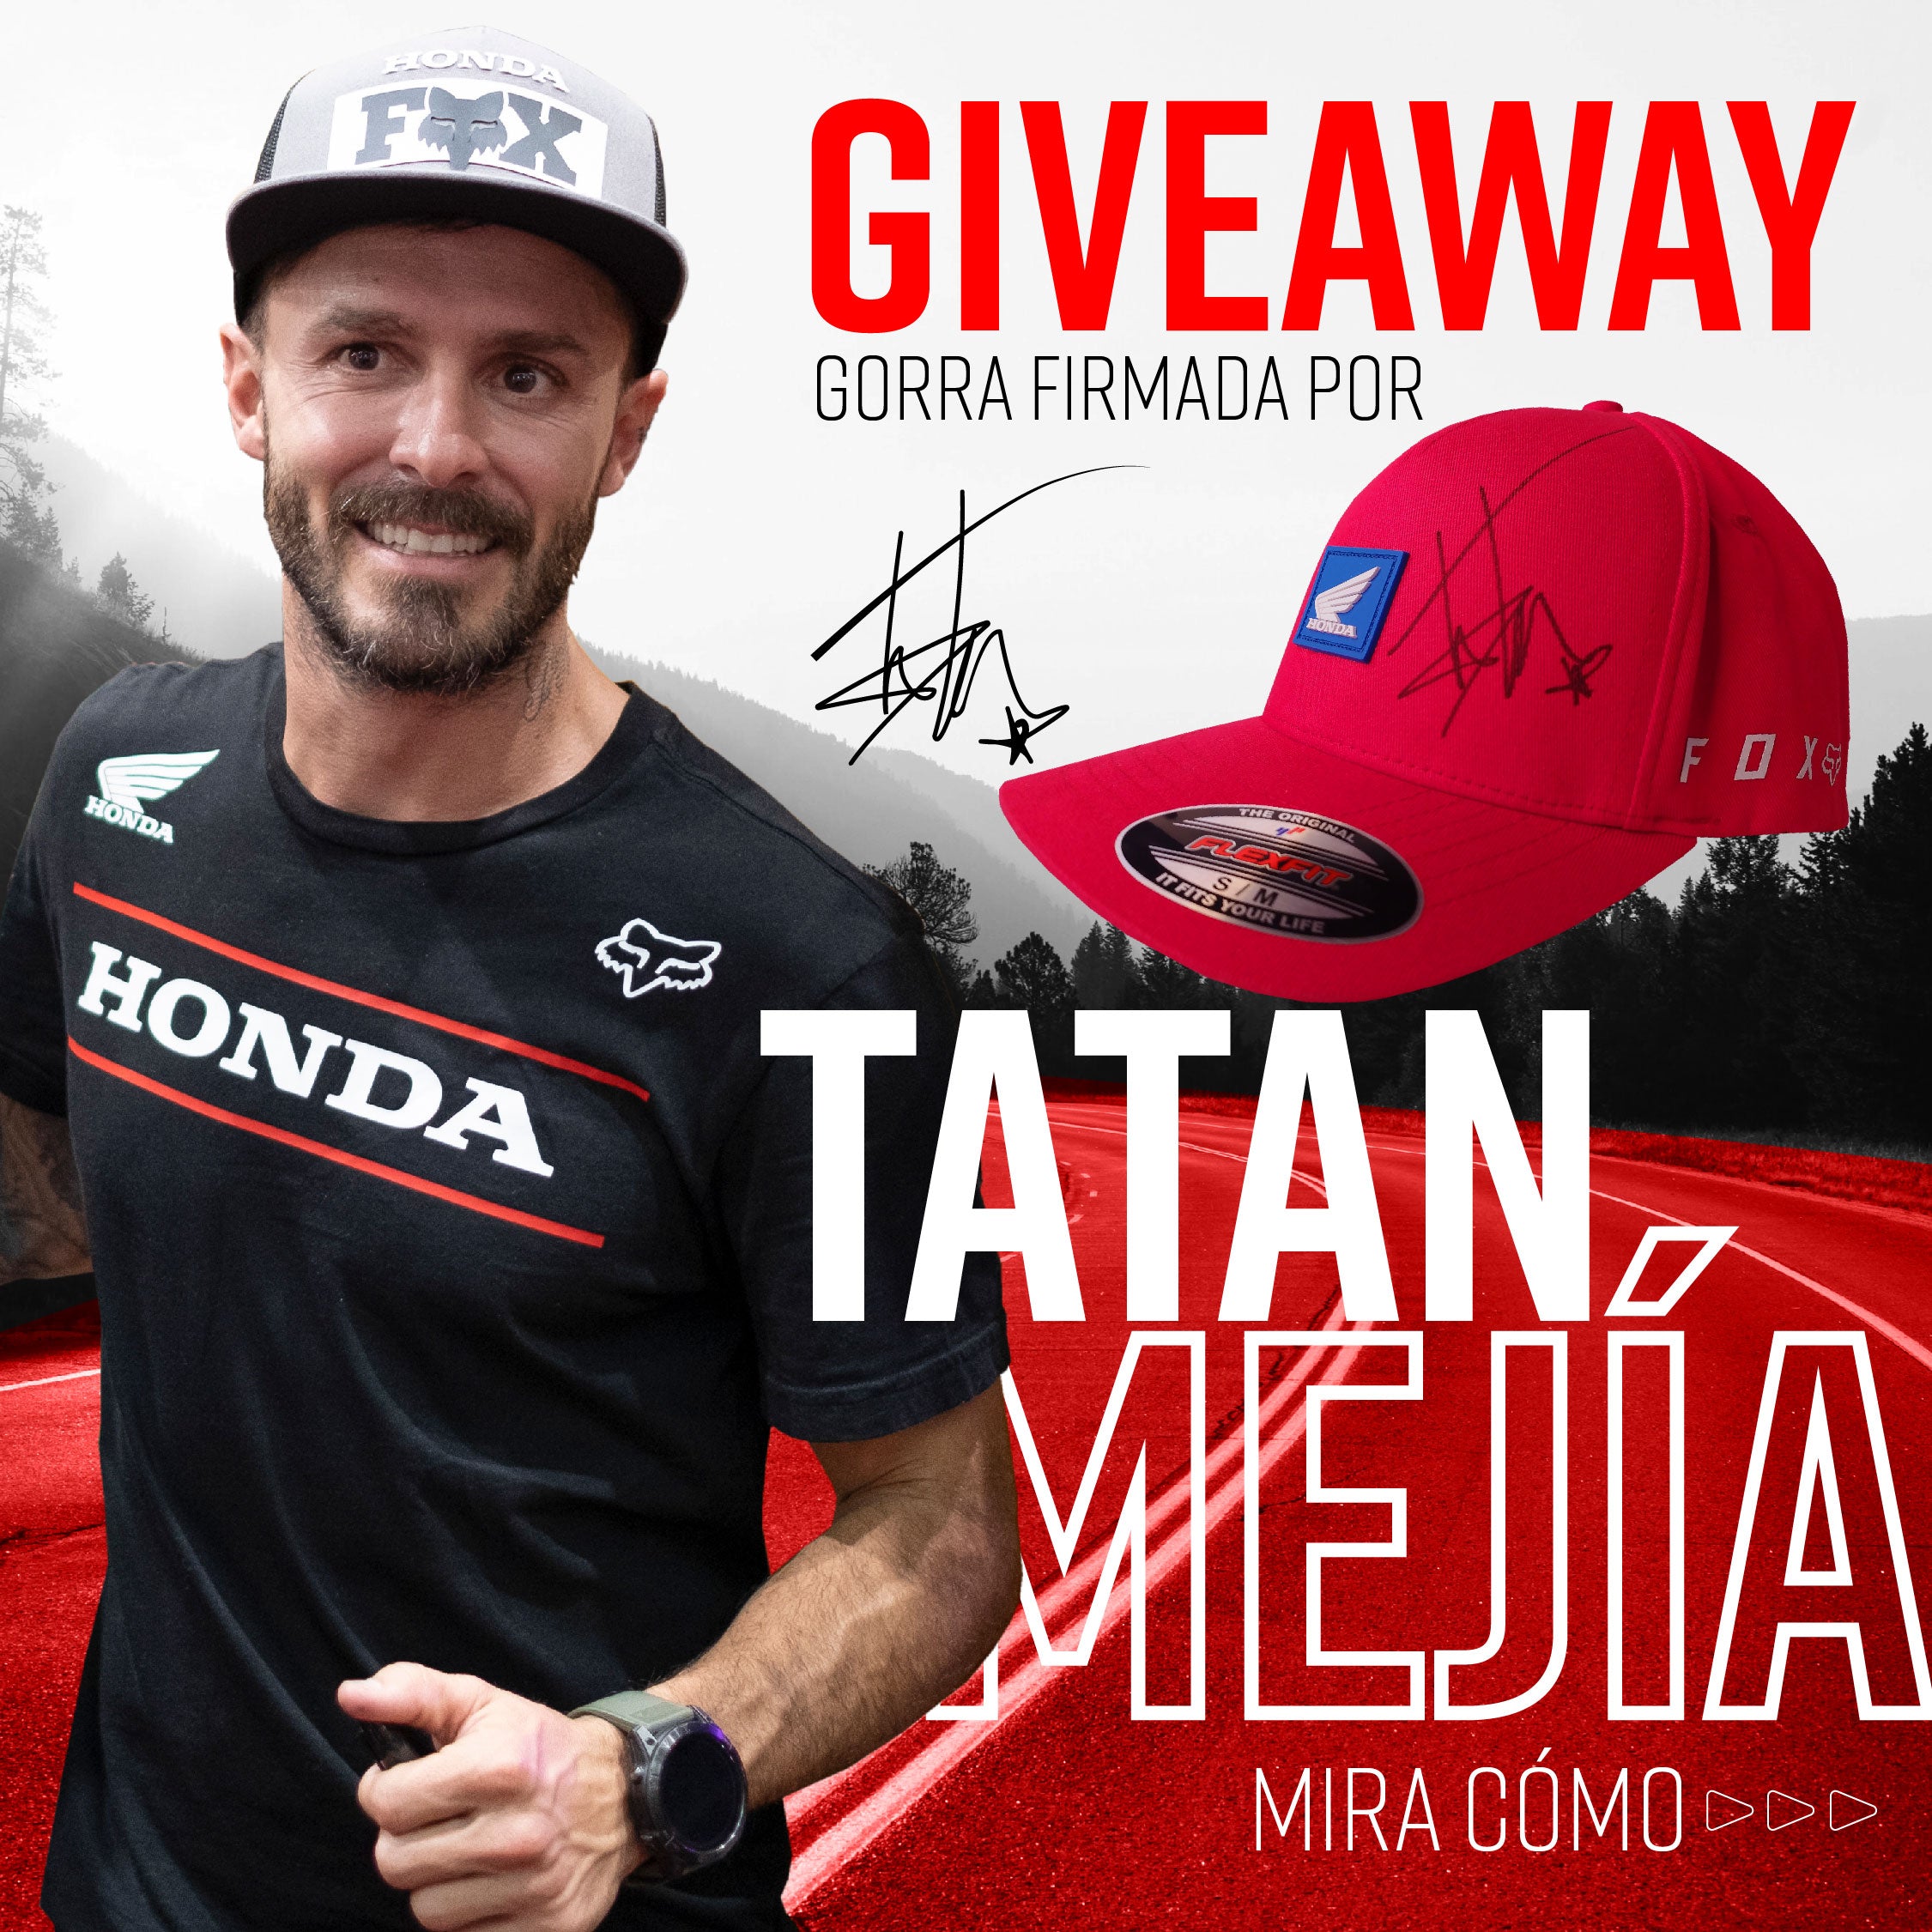 Giveaway #ALWAY5FOX Tatán Mejia